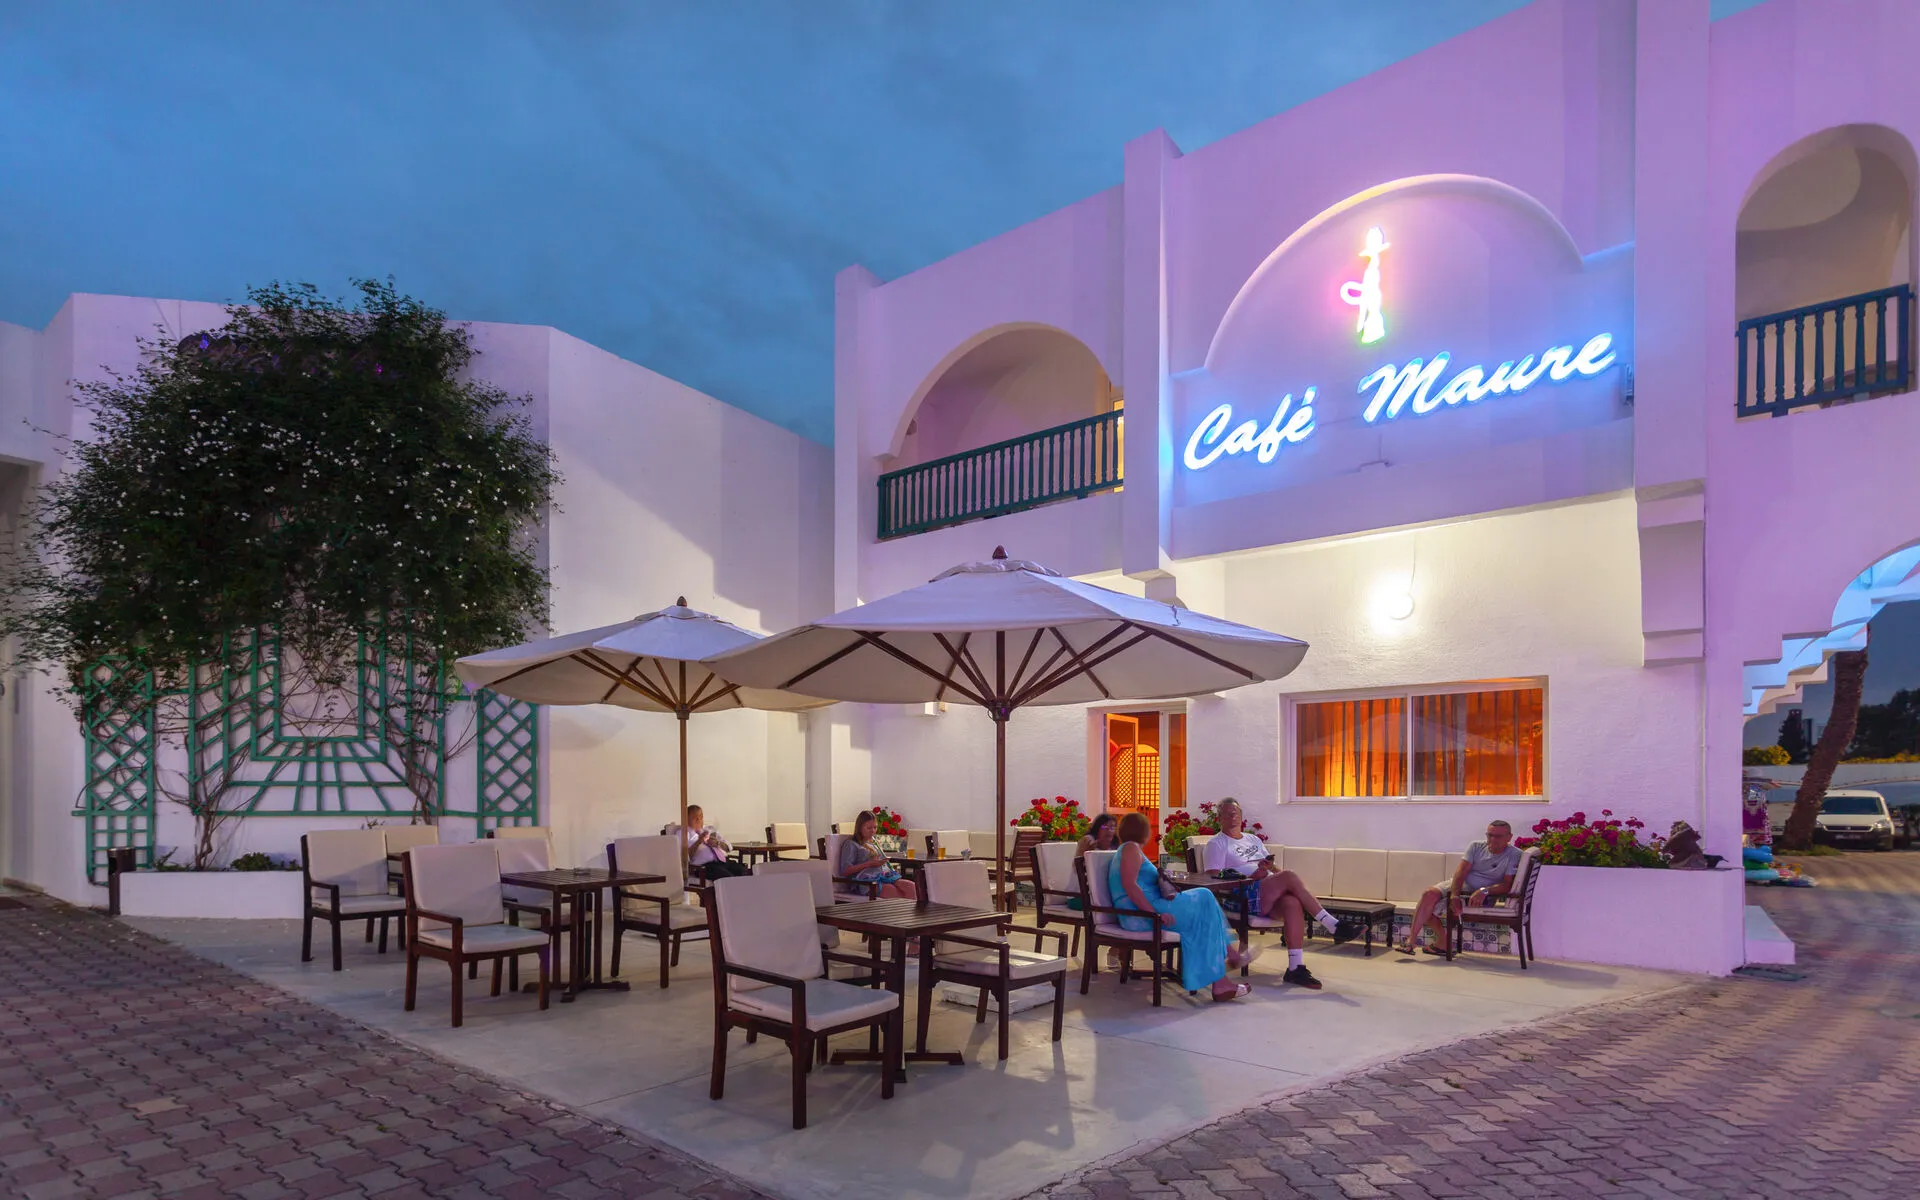 Tunisie - Port el Kantaoui - Hotel El Mouradi Palace 5*